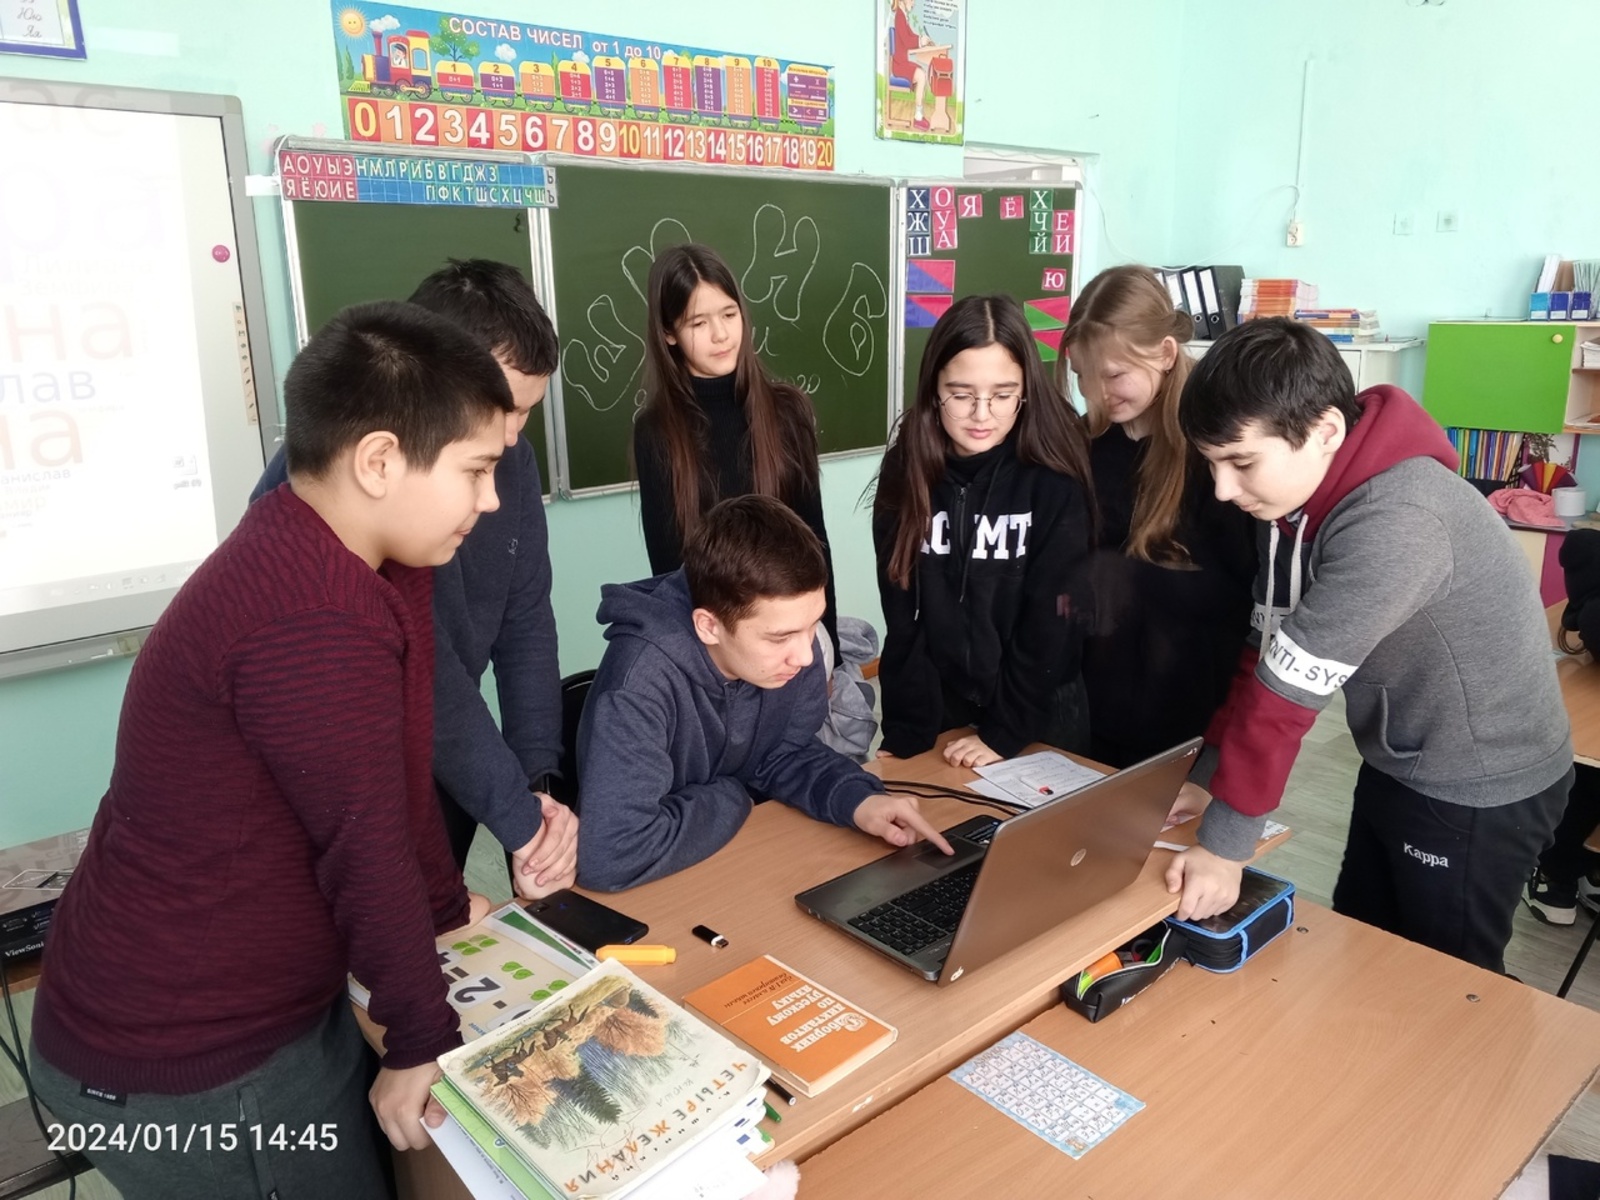 Учащиеся школы д. Самарского отделения верят, что их мечта осуществится!